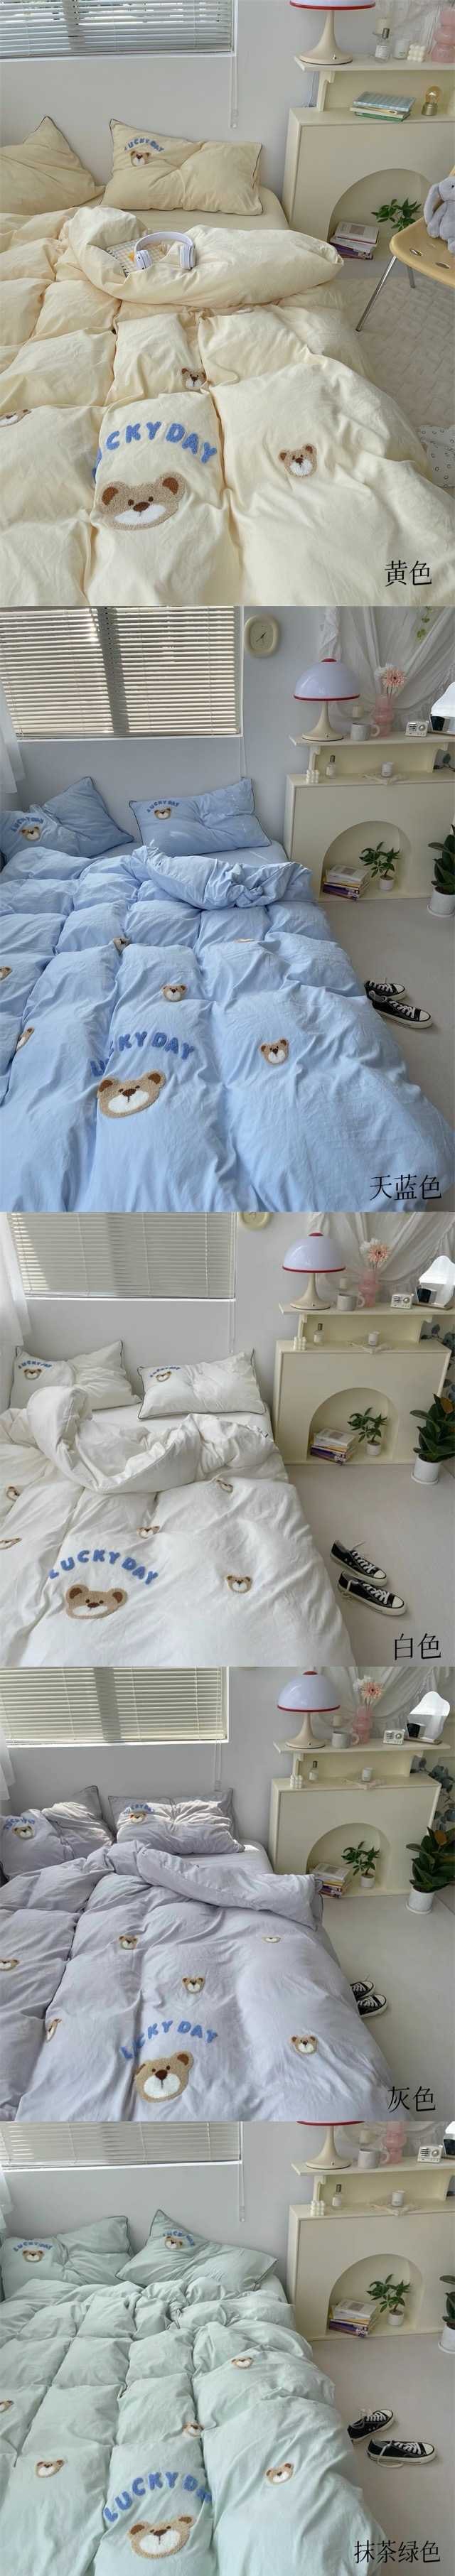 【中国直邮】Lullabuy 奶噗噗的小熊三件套四季居家床品套装床单被套枕套透气柔软可爱(床单*1+被套*1+枕套*1)  Twin Size 白色